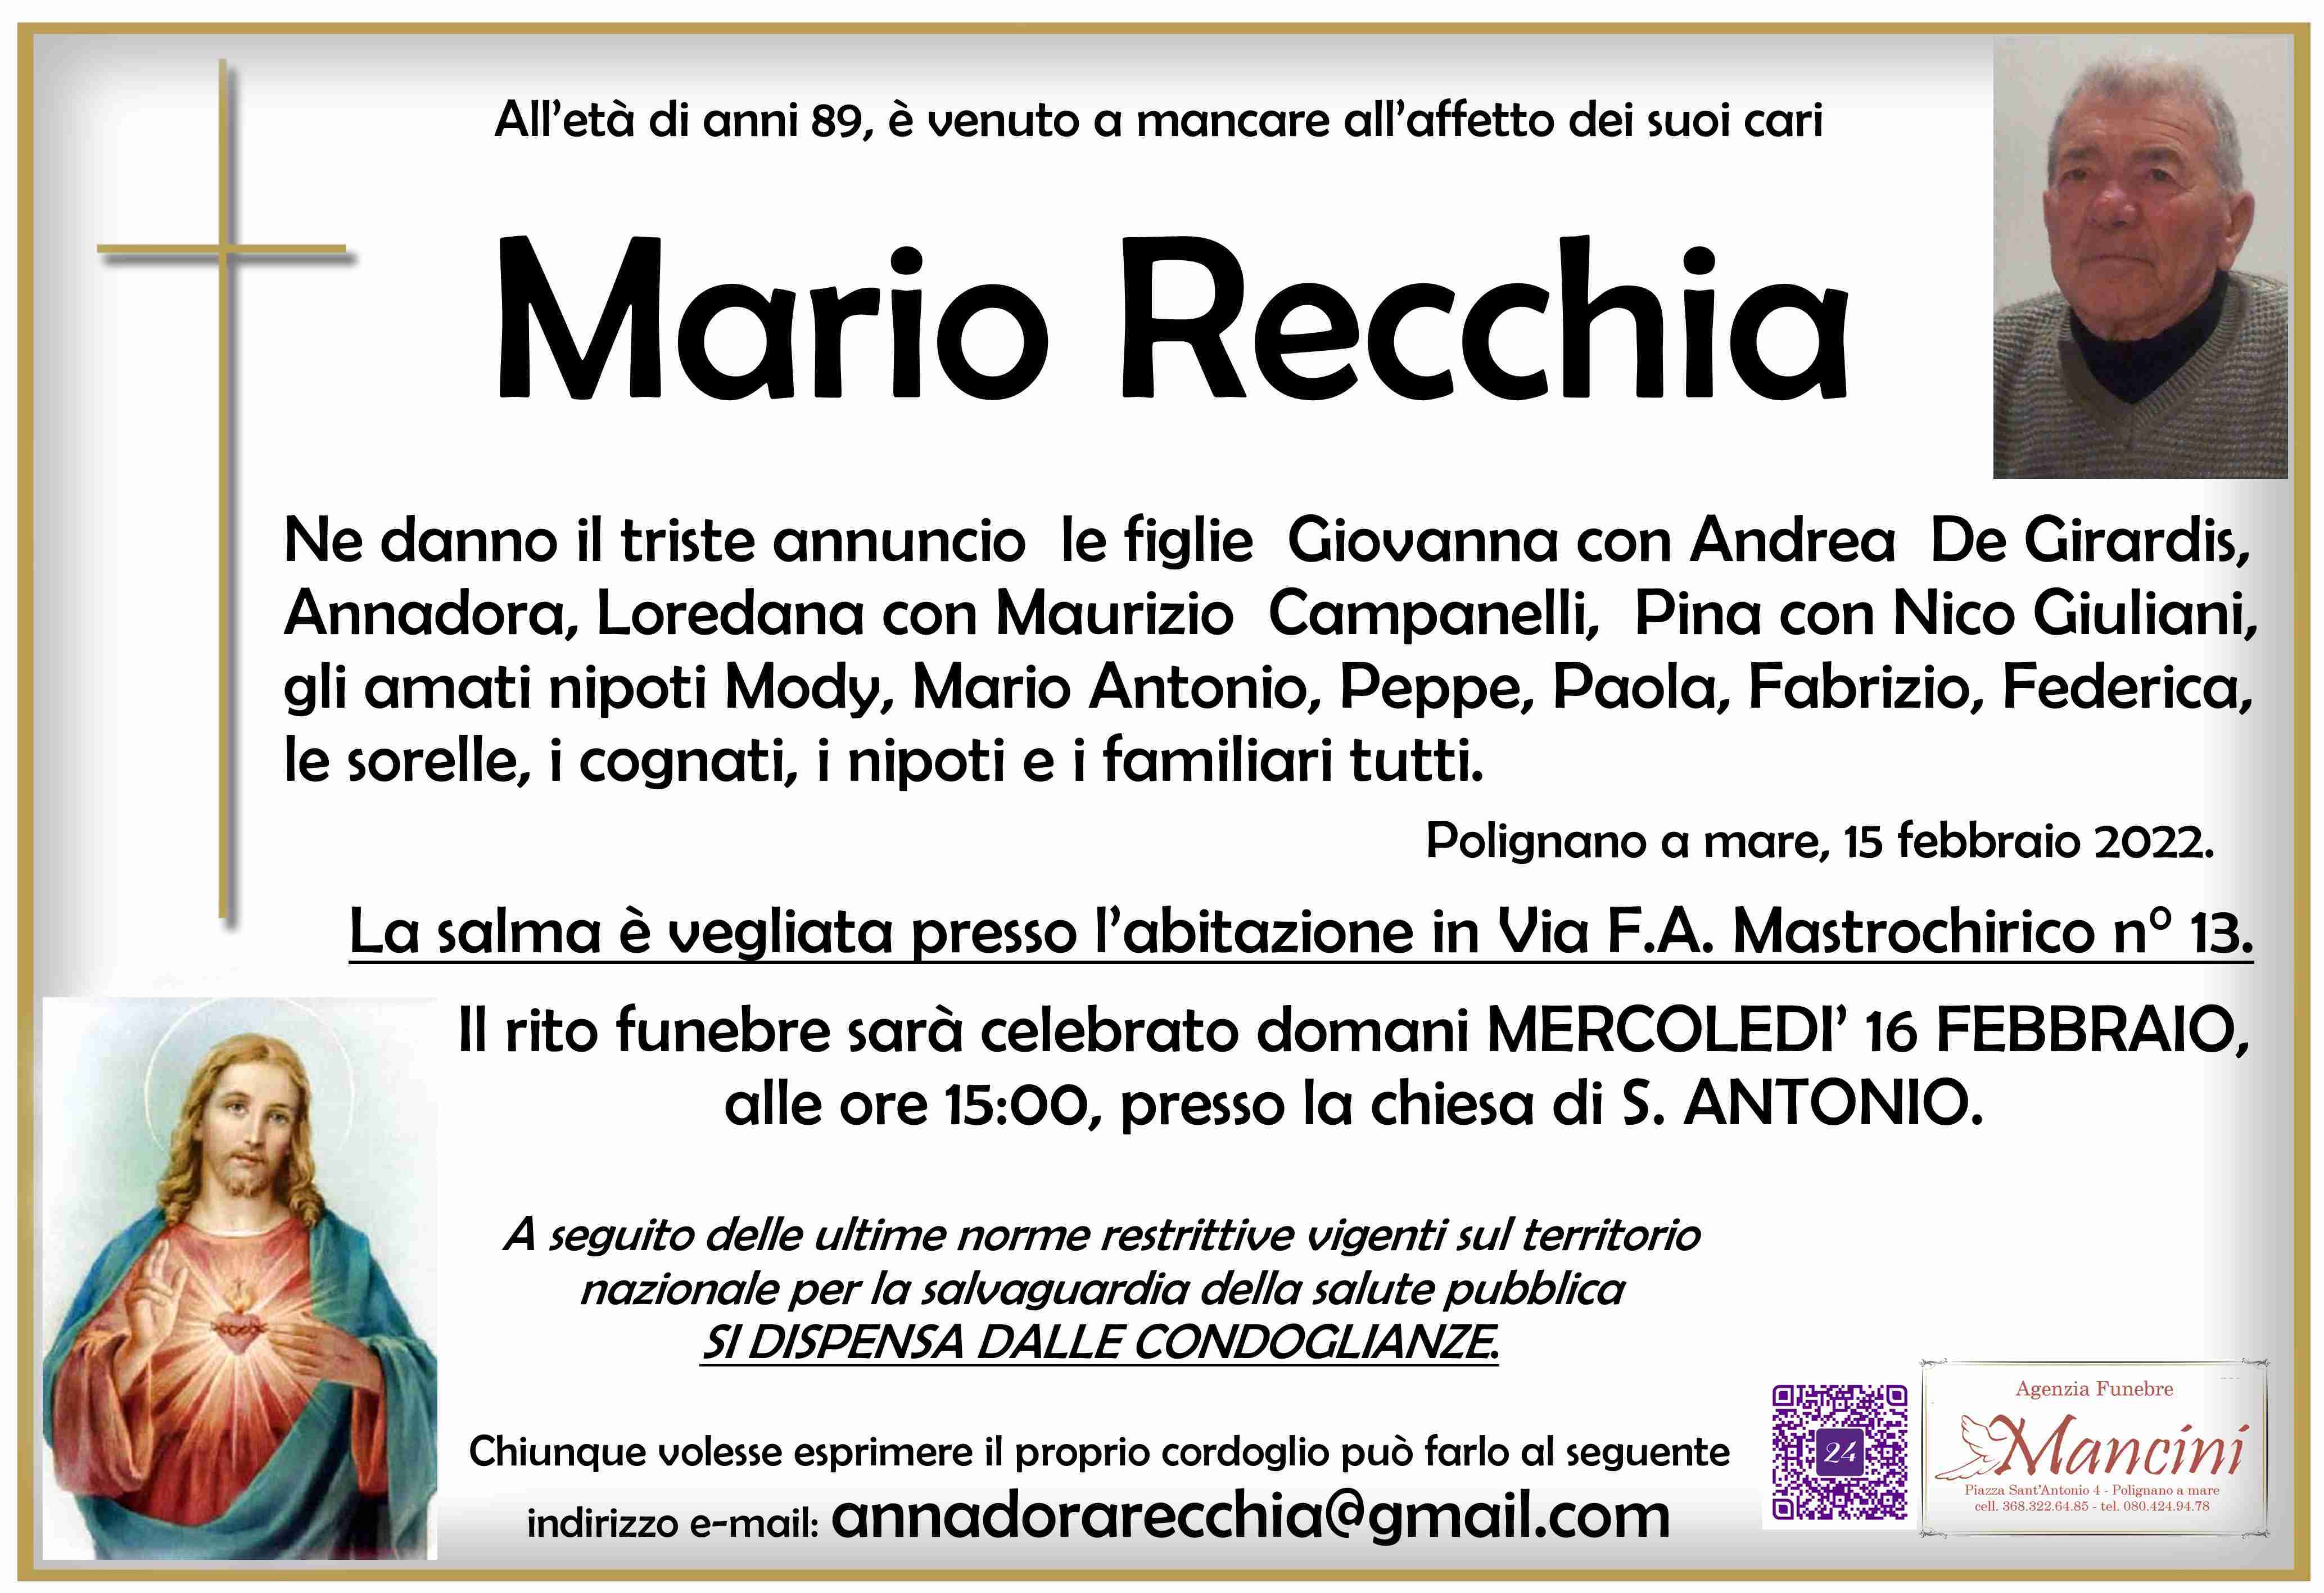 Mario Recchia